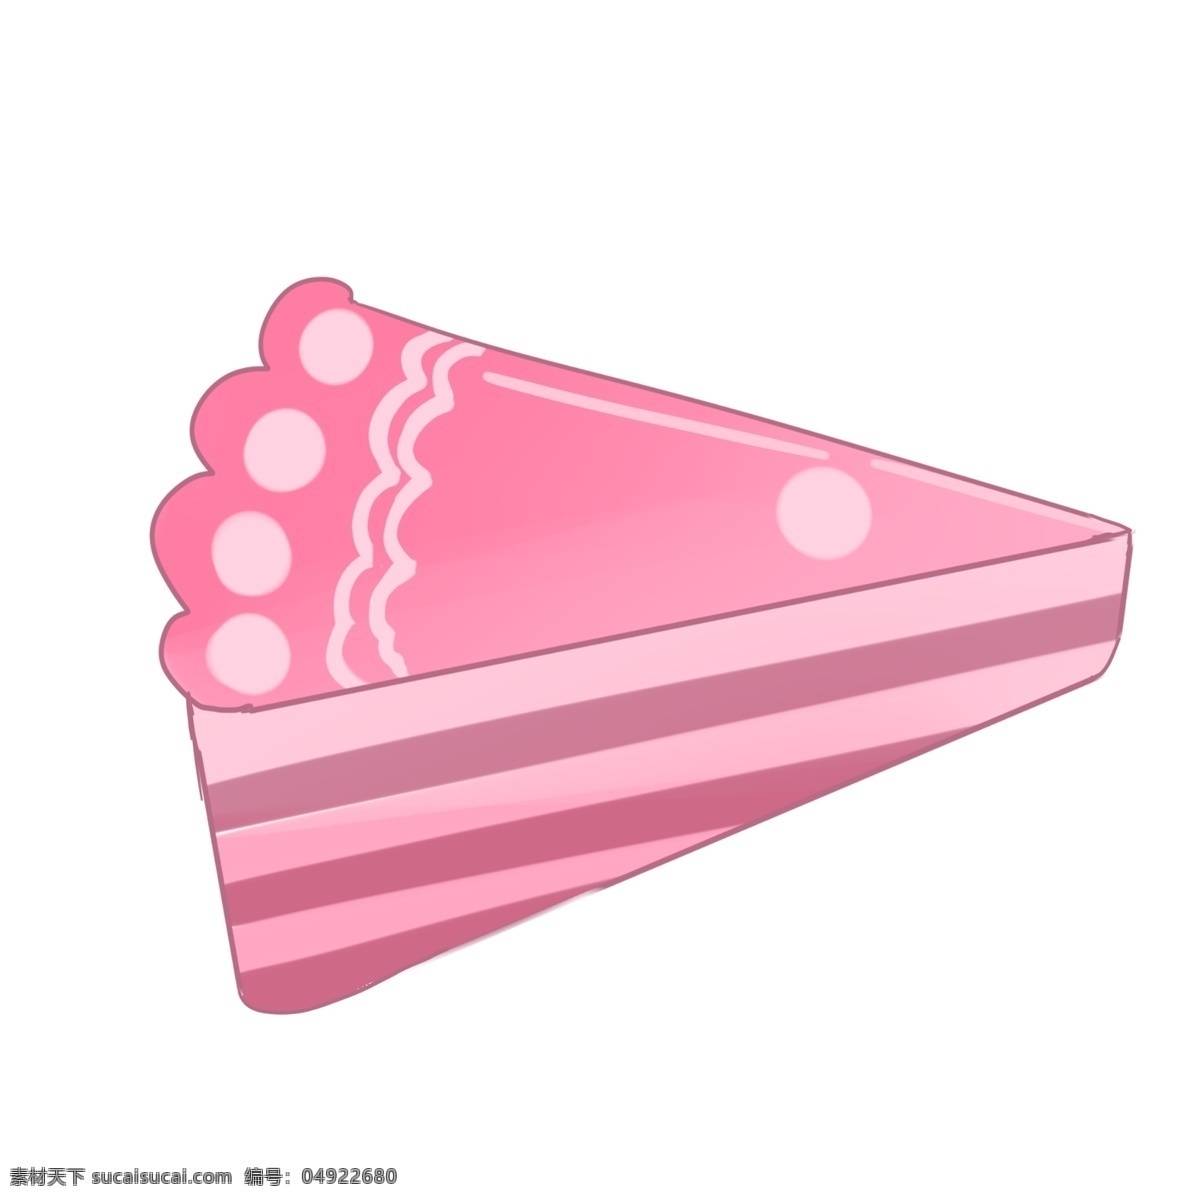 零食 粉色 甜品 蛋糕 手绘 卡通